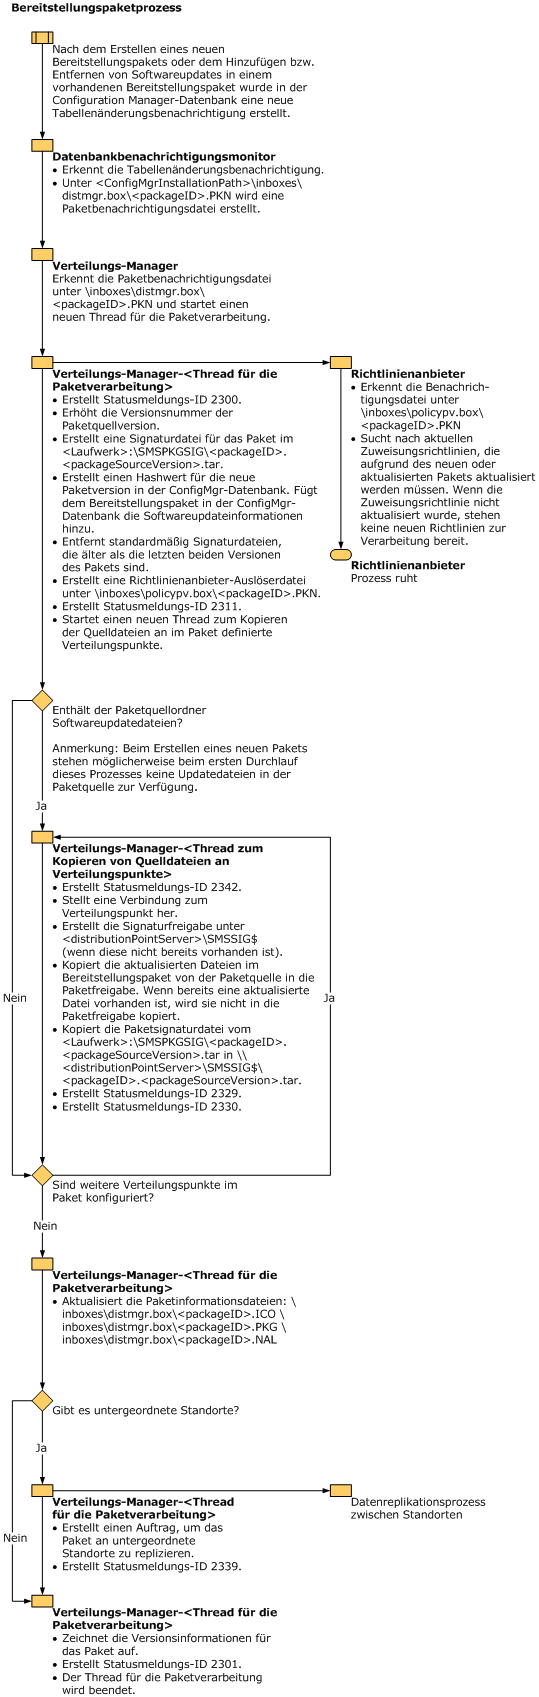 Flussdiagramm zu Softwareupdatesbereitstellungspaket